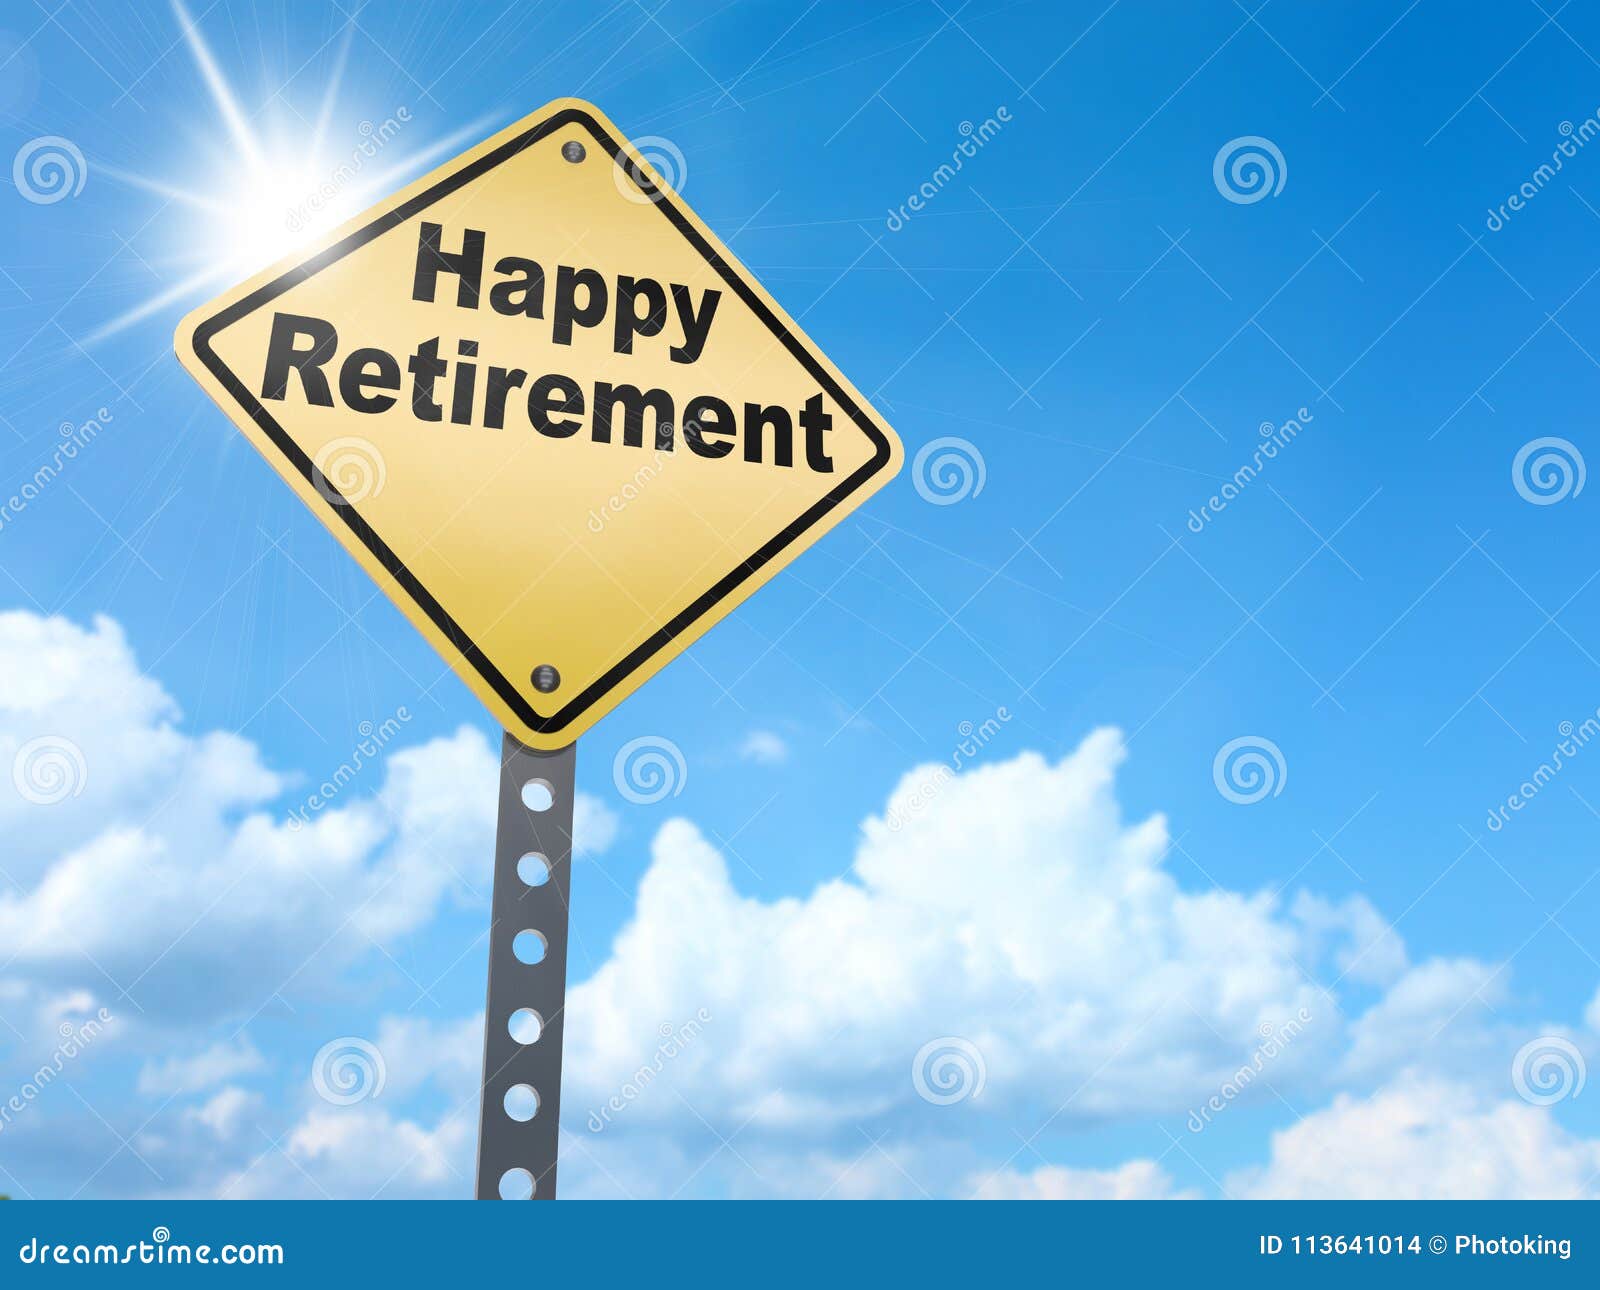 happy retirement sign